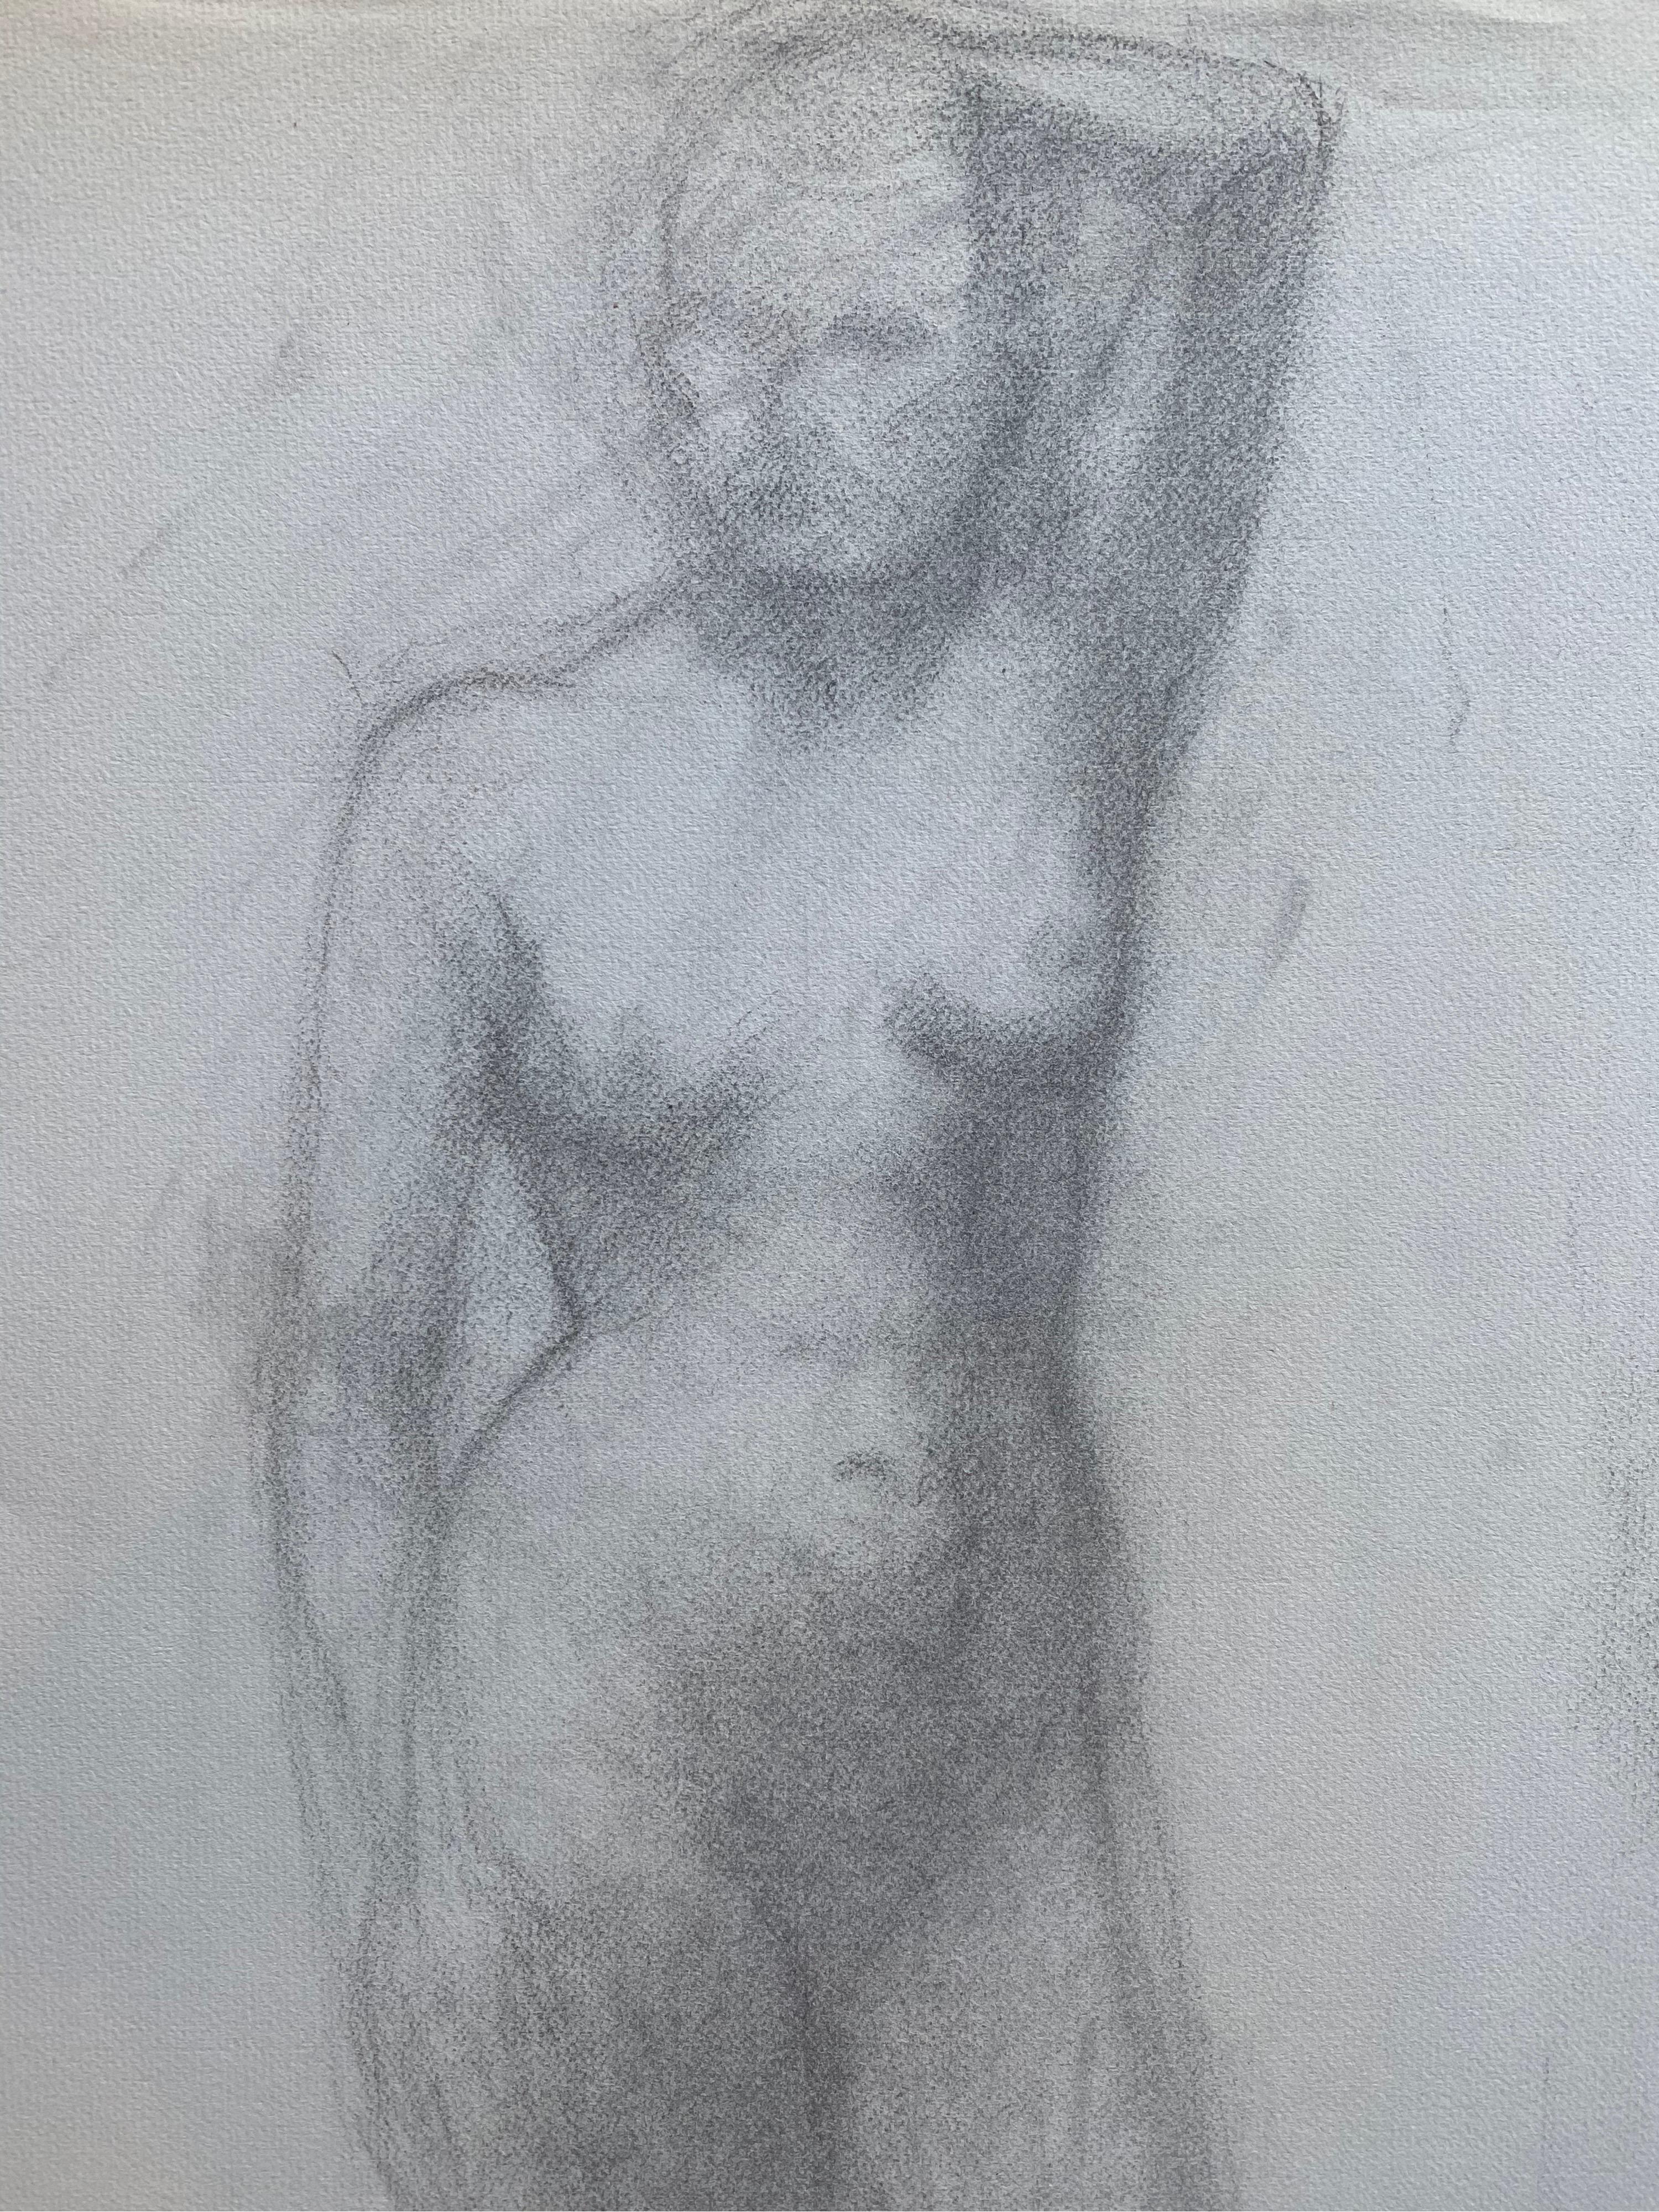 Drawing au fusain français du milieu du 20e siècle - Portrait d'une femme nue debout